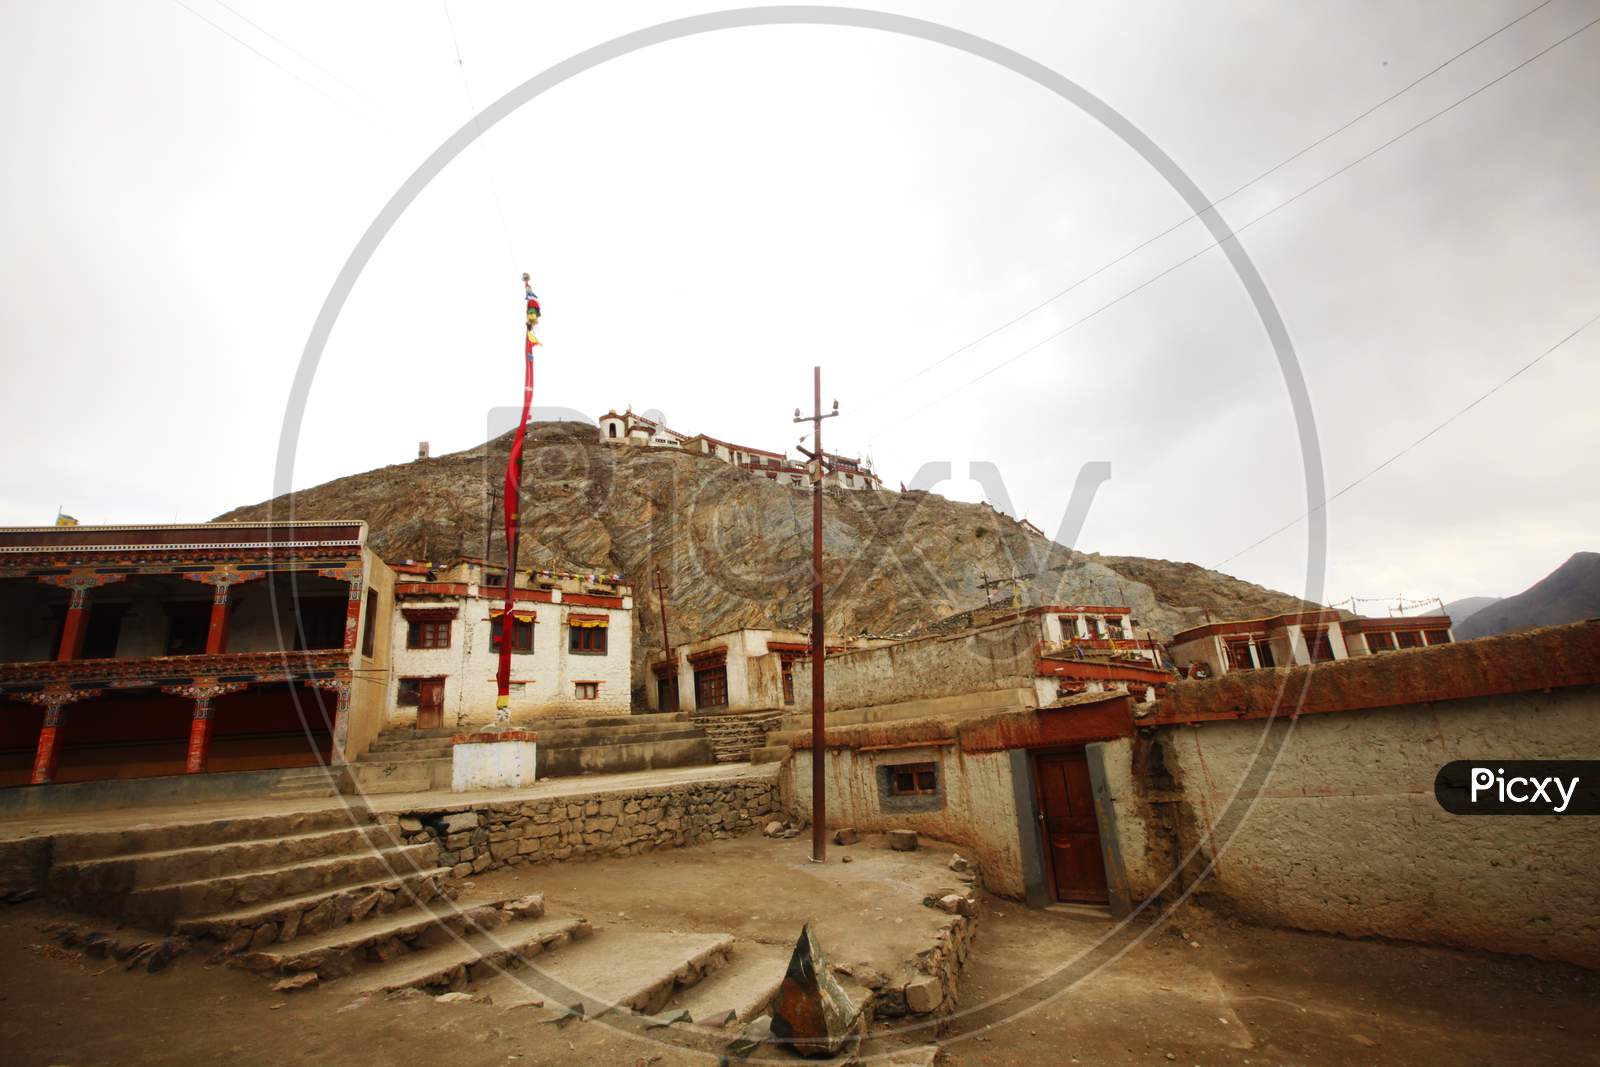 Monasteries and Houses in leh Ladakh region